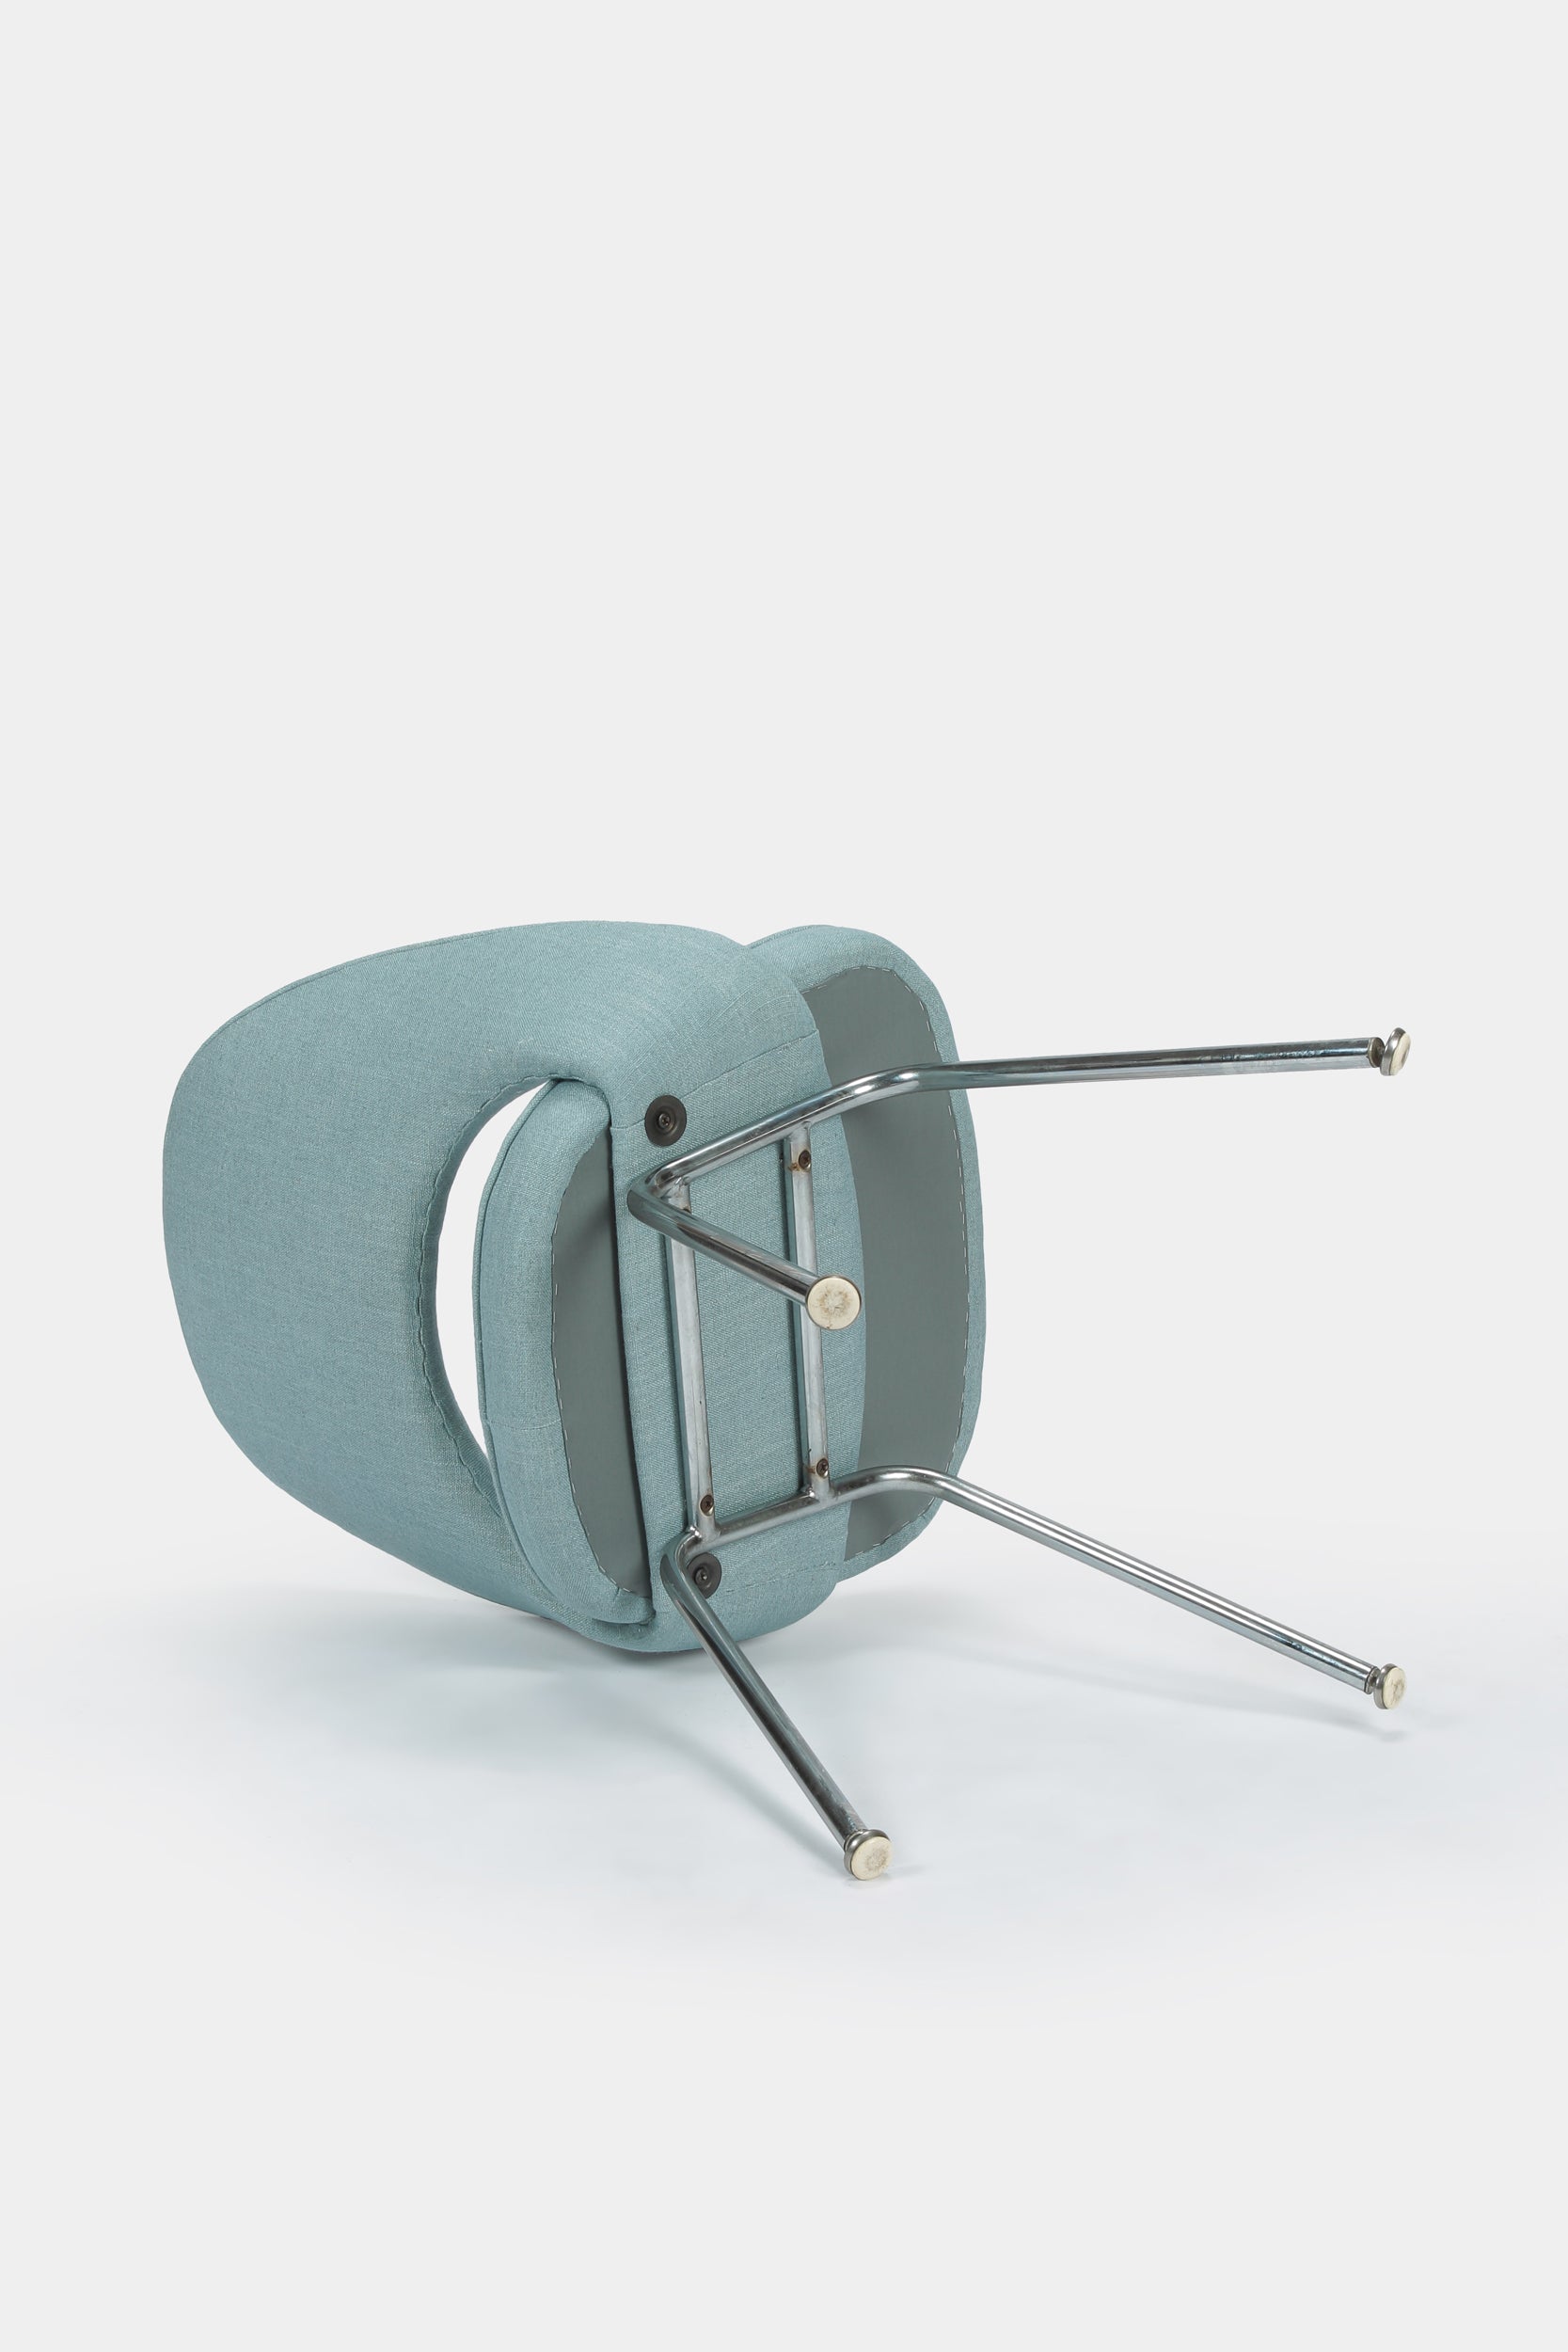 Eero Saarinen Stuhl Modell 72 Knoll International 50er